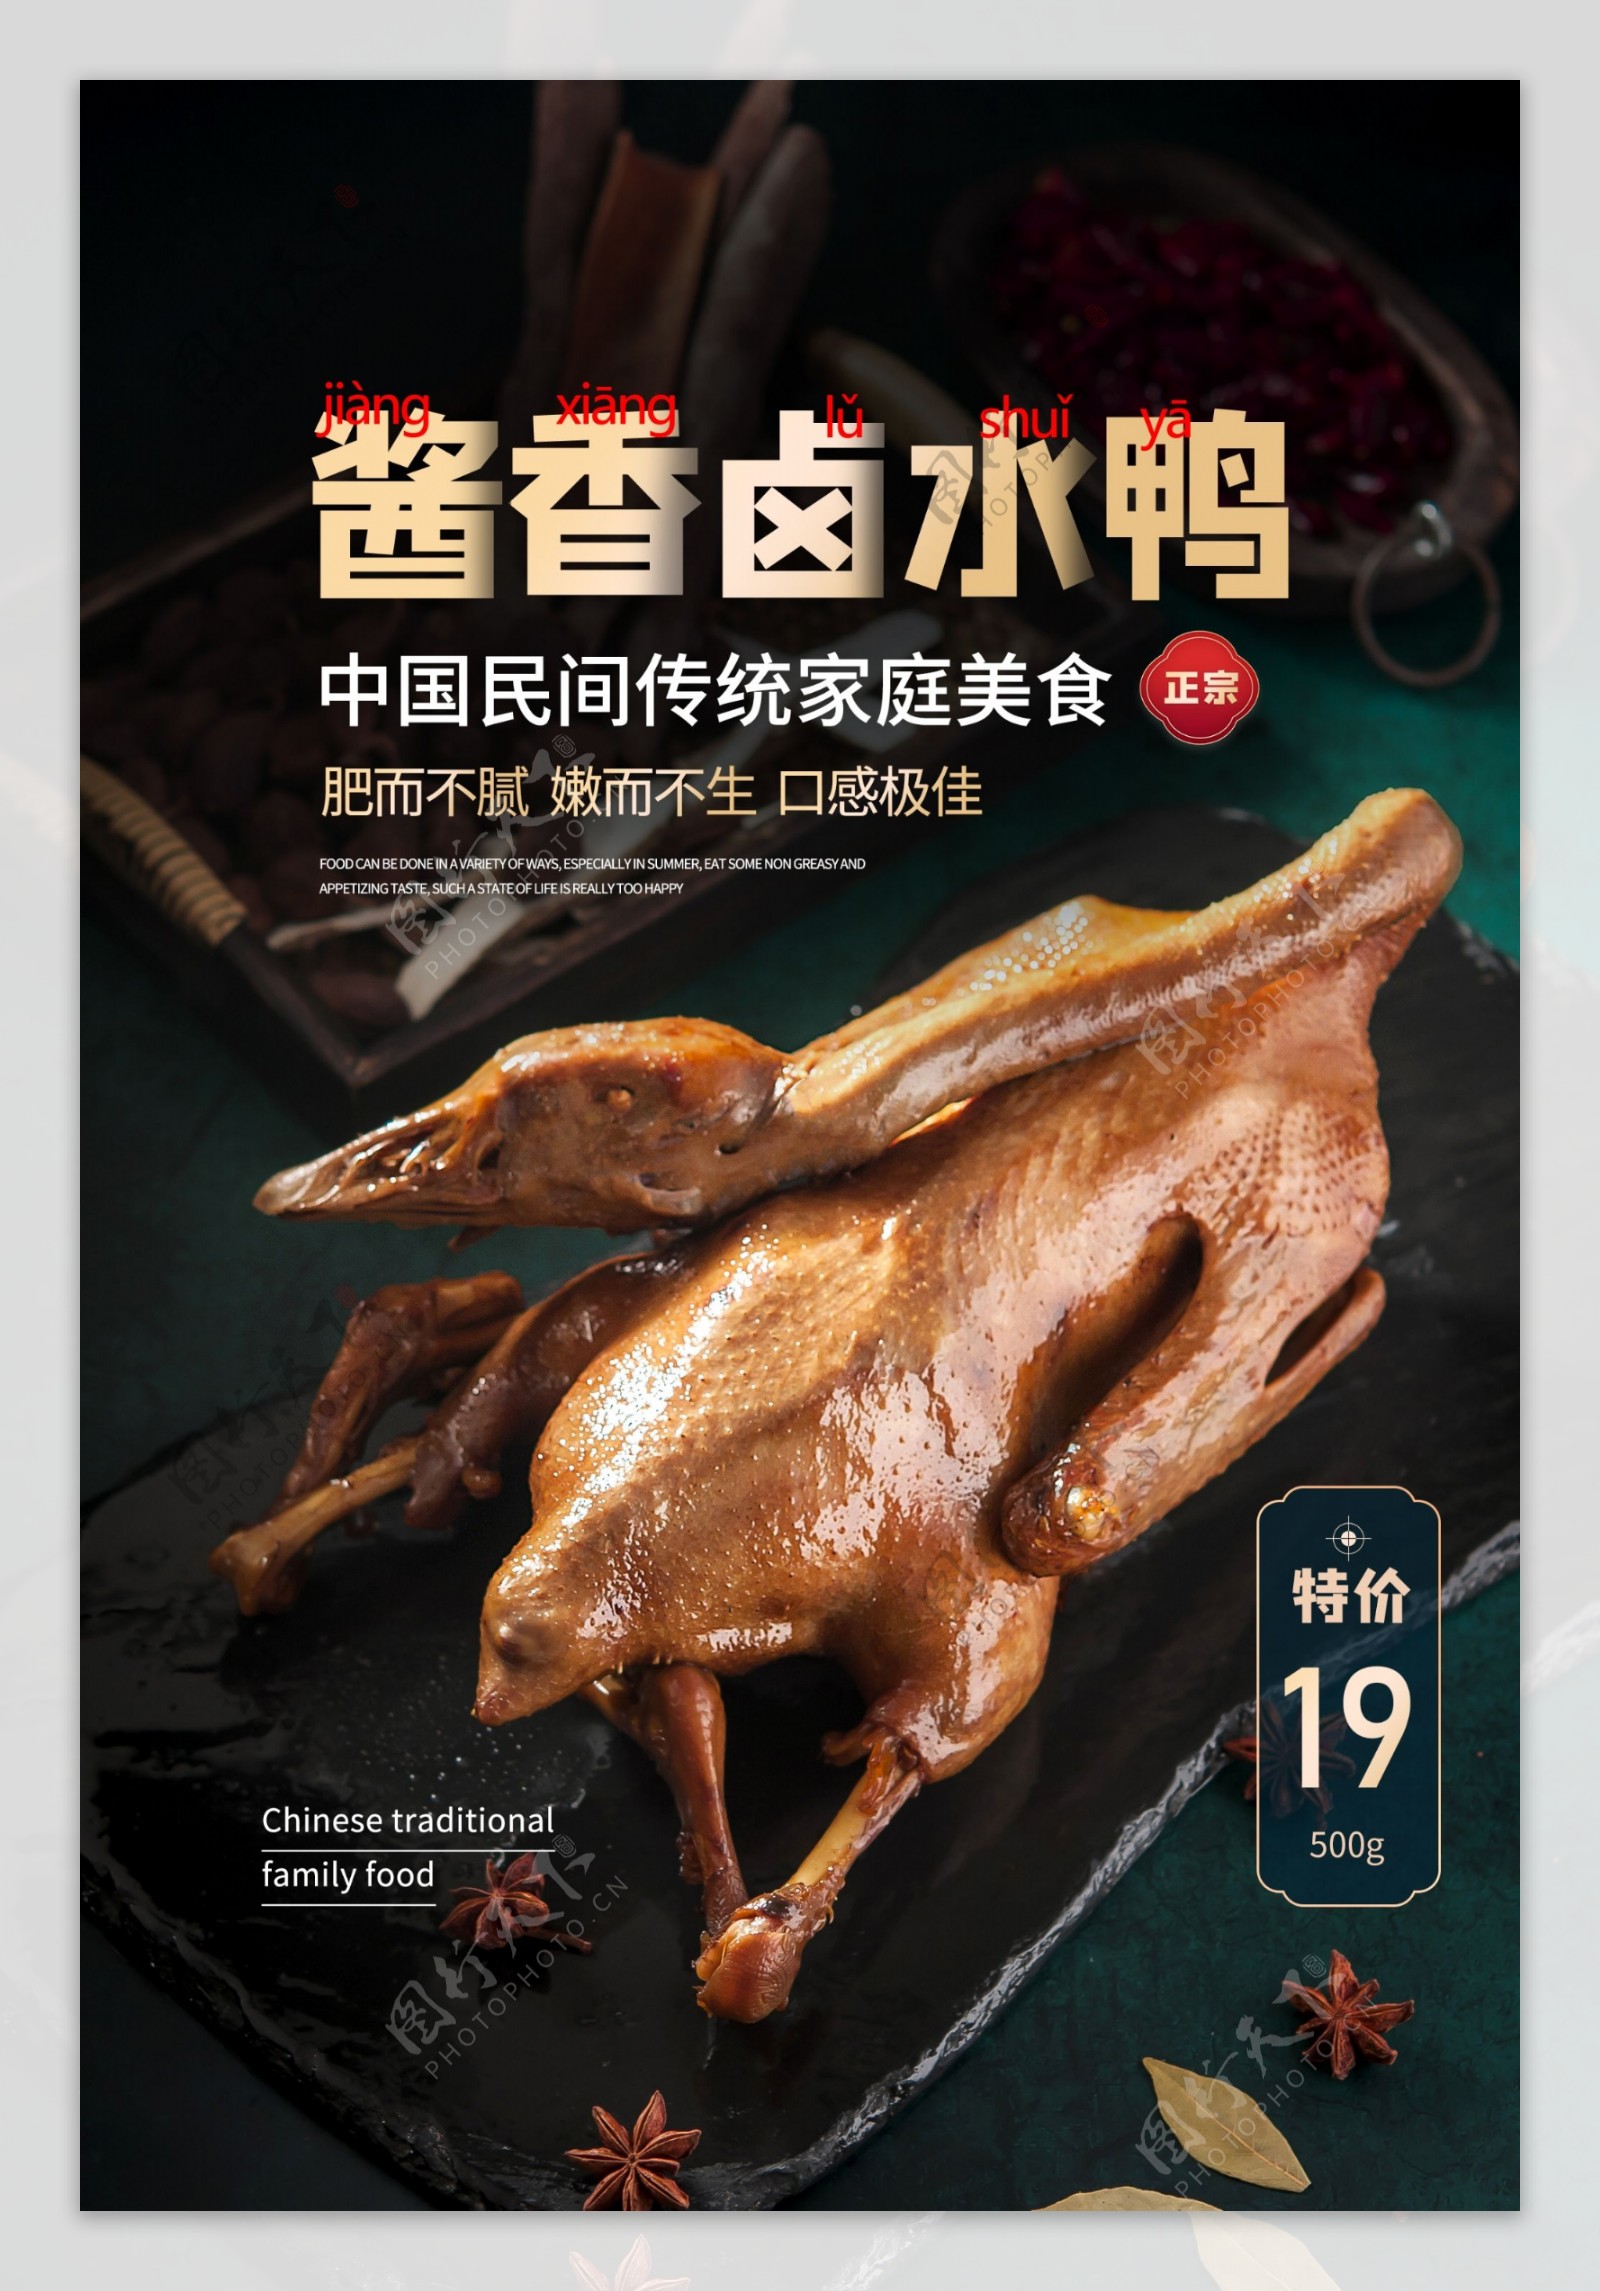 酱香卤水鸭美食活动宣传海报素材图片